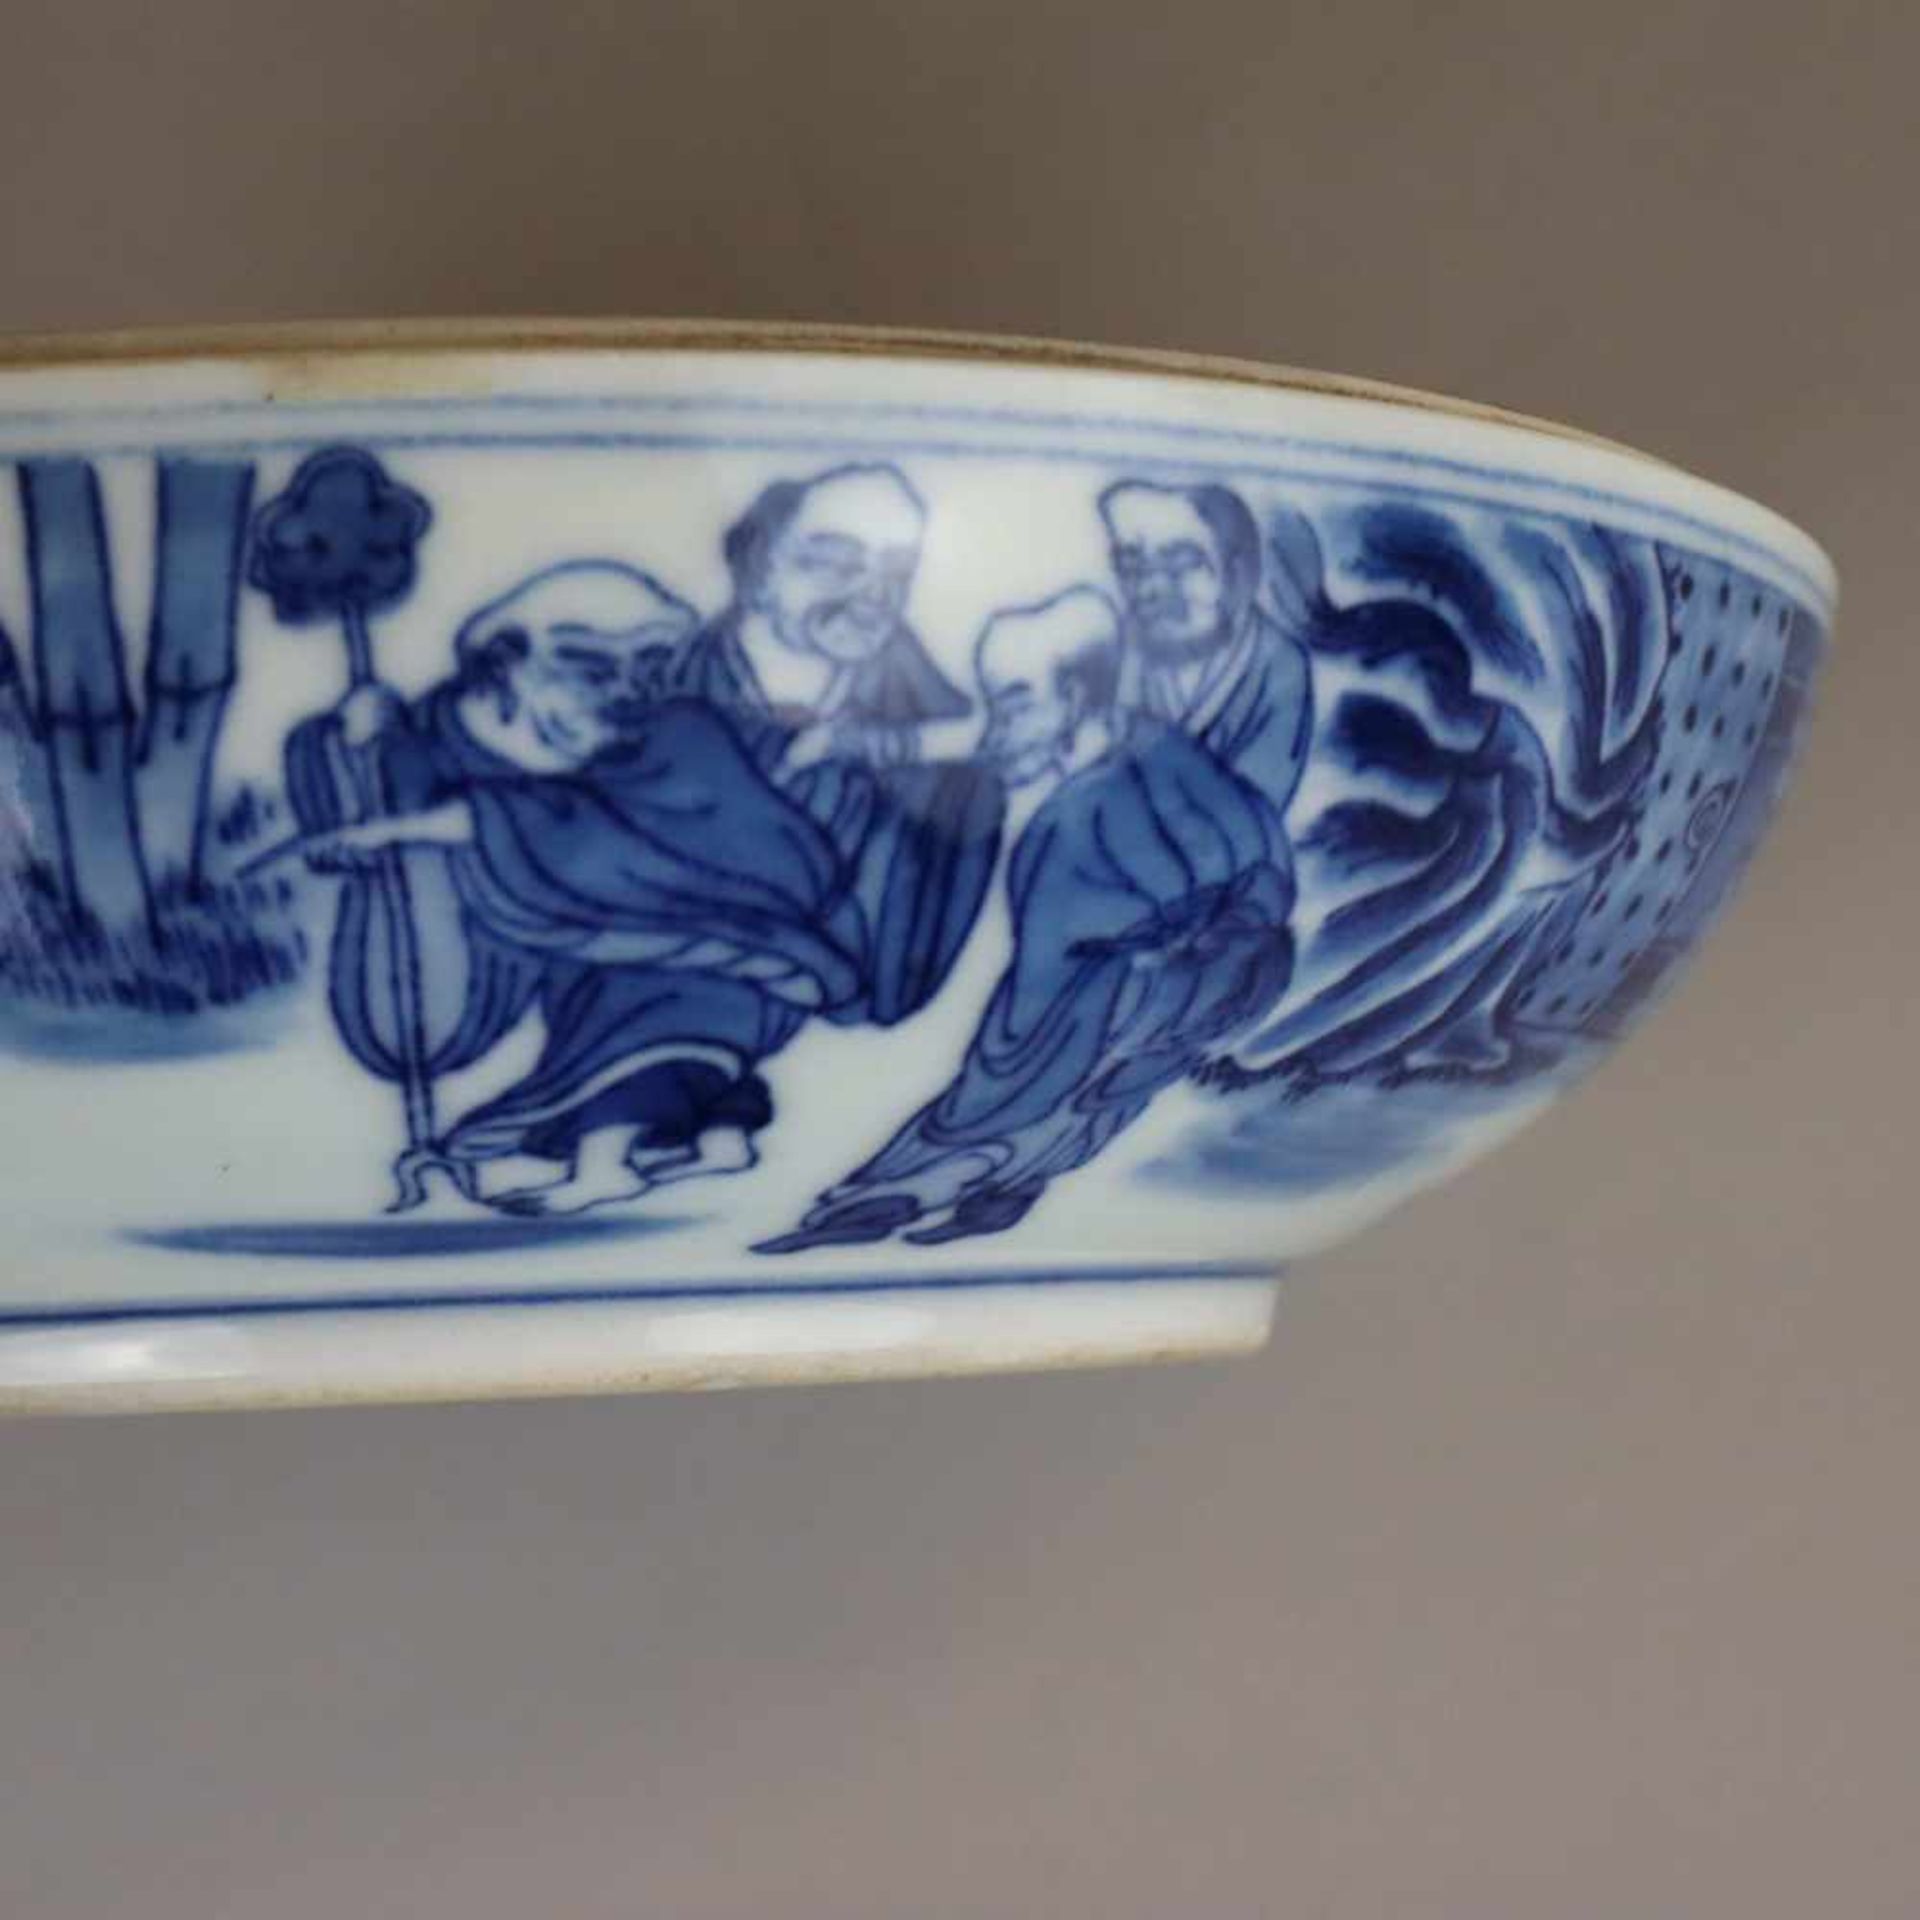 Deckelschale - China,Blau-Weiß-Porzellan, Schale mit bombiertem Stülpdeckel, Bemalung in - Image 6 of 8